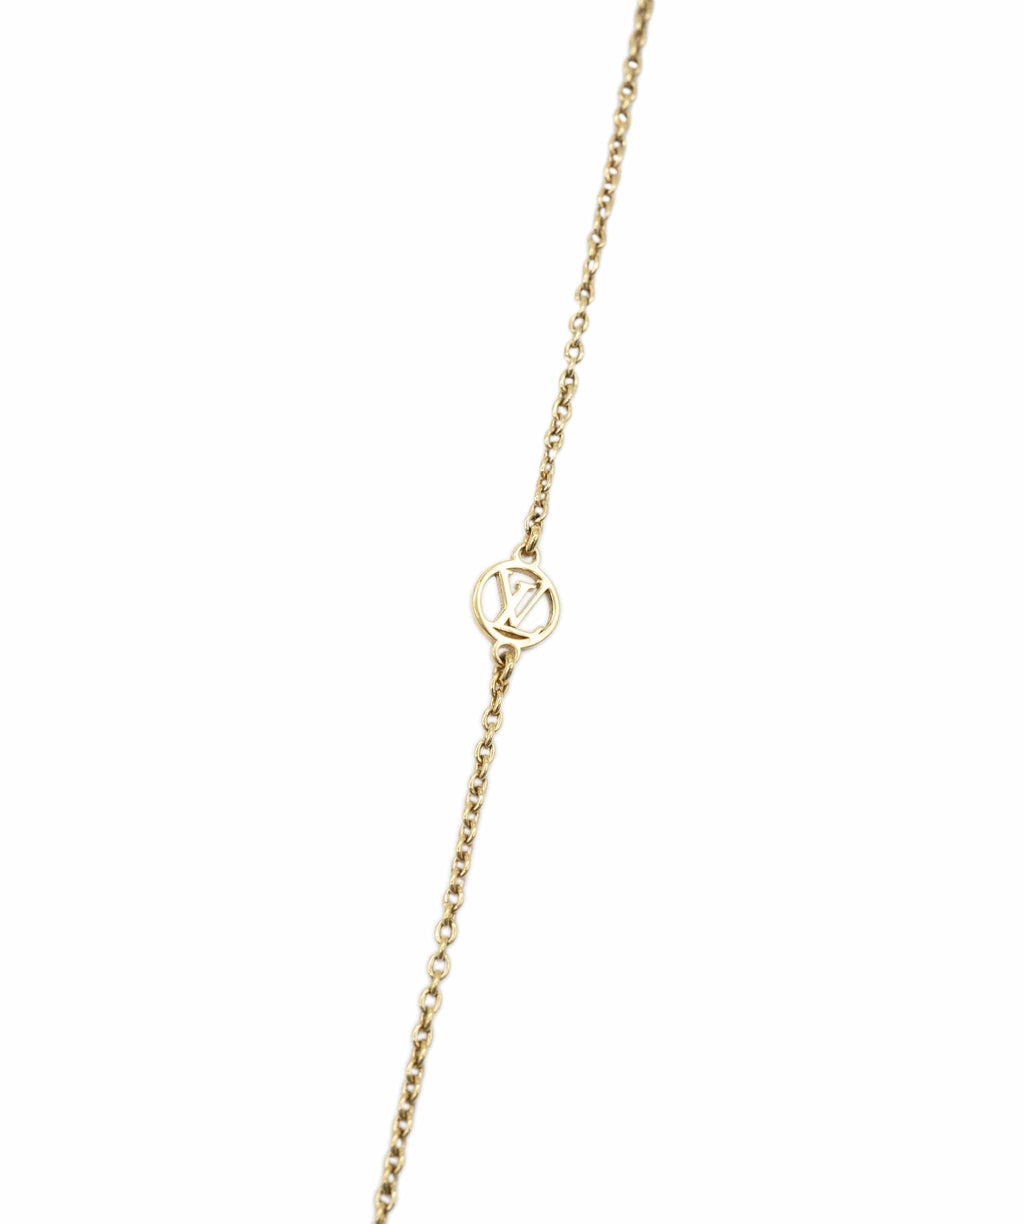 Louis Vuitton necklace : 2250 Flowers : 200❤️